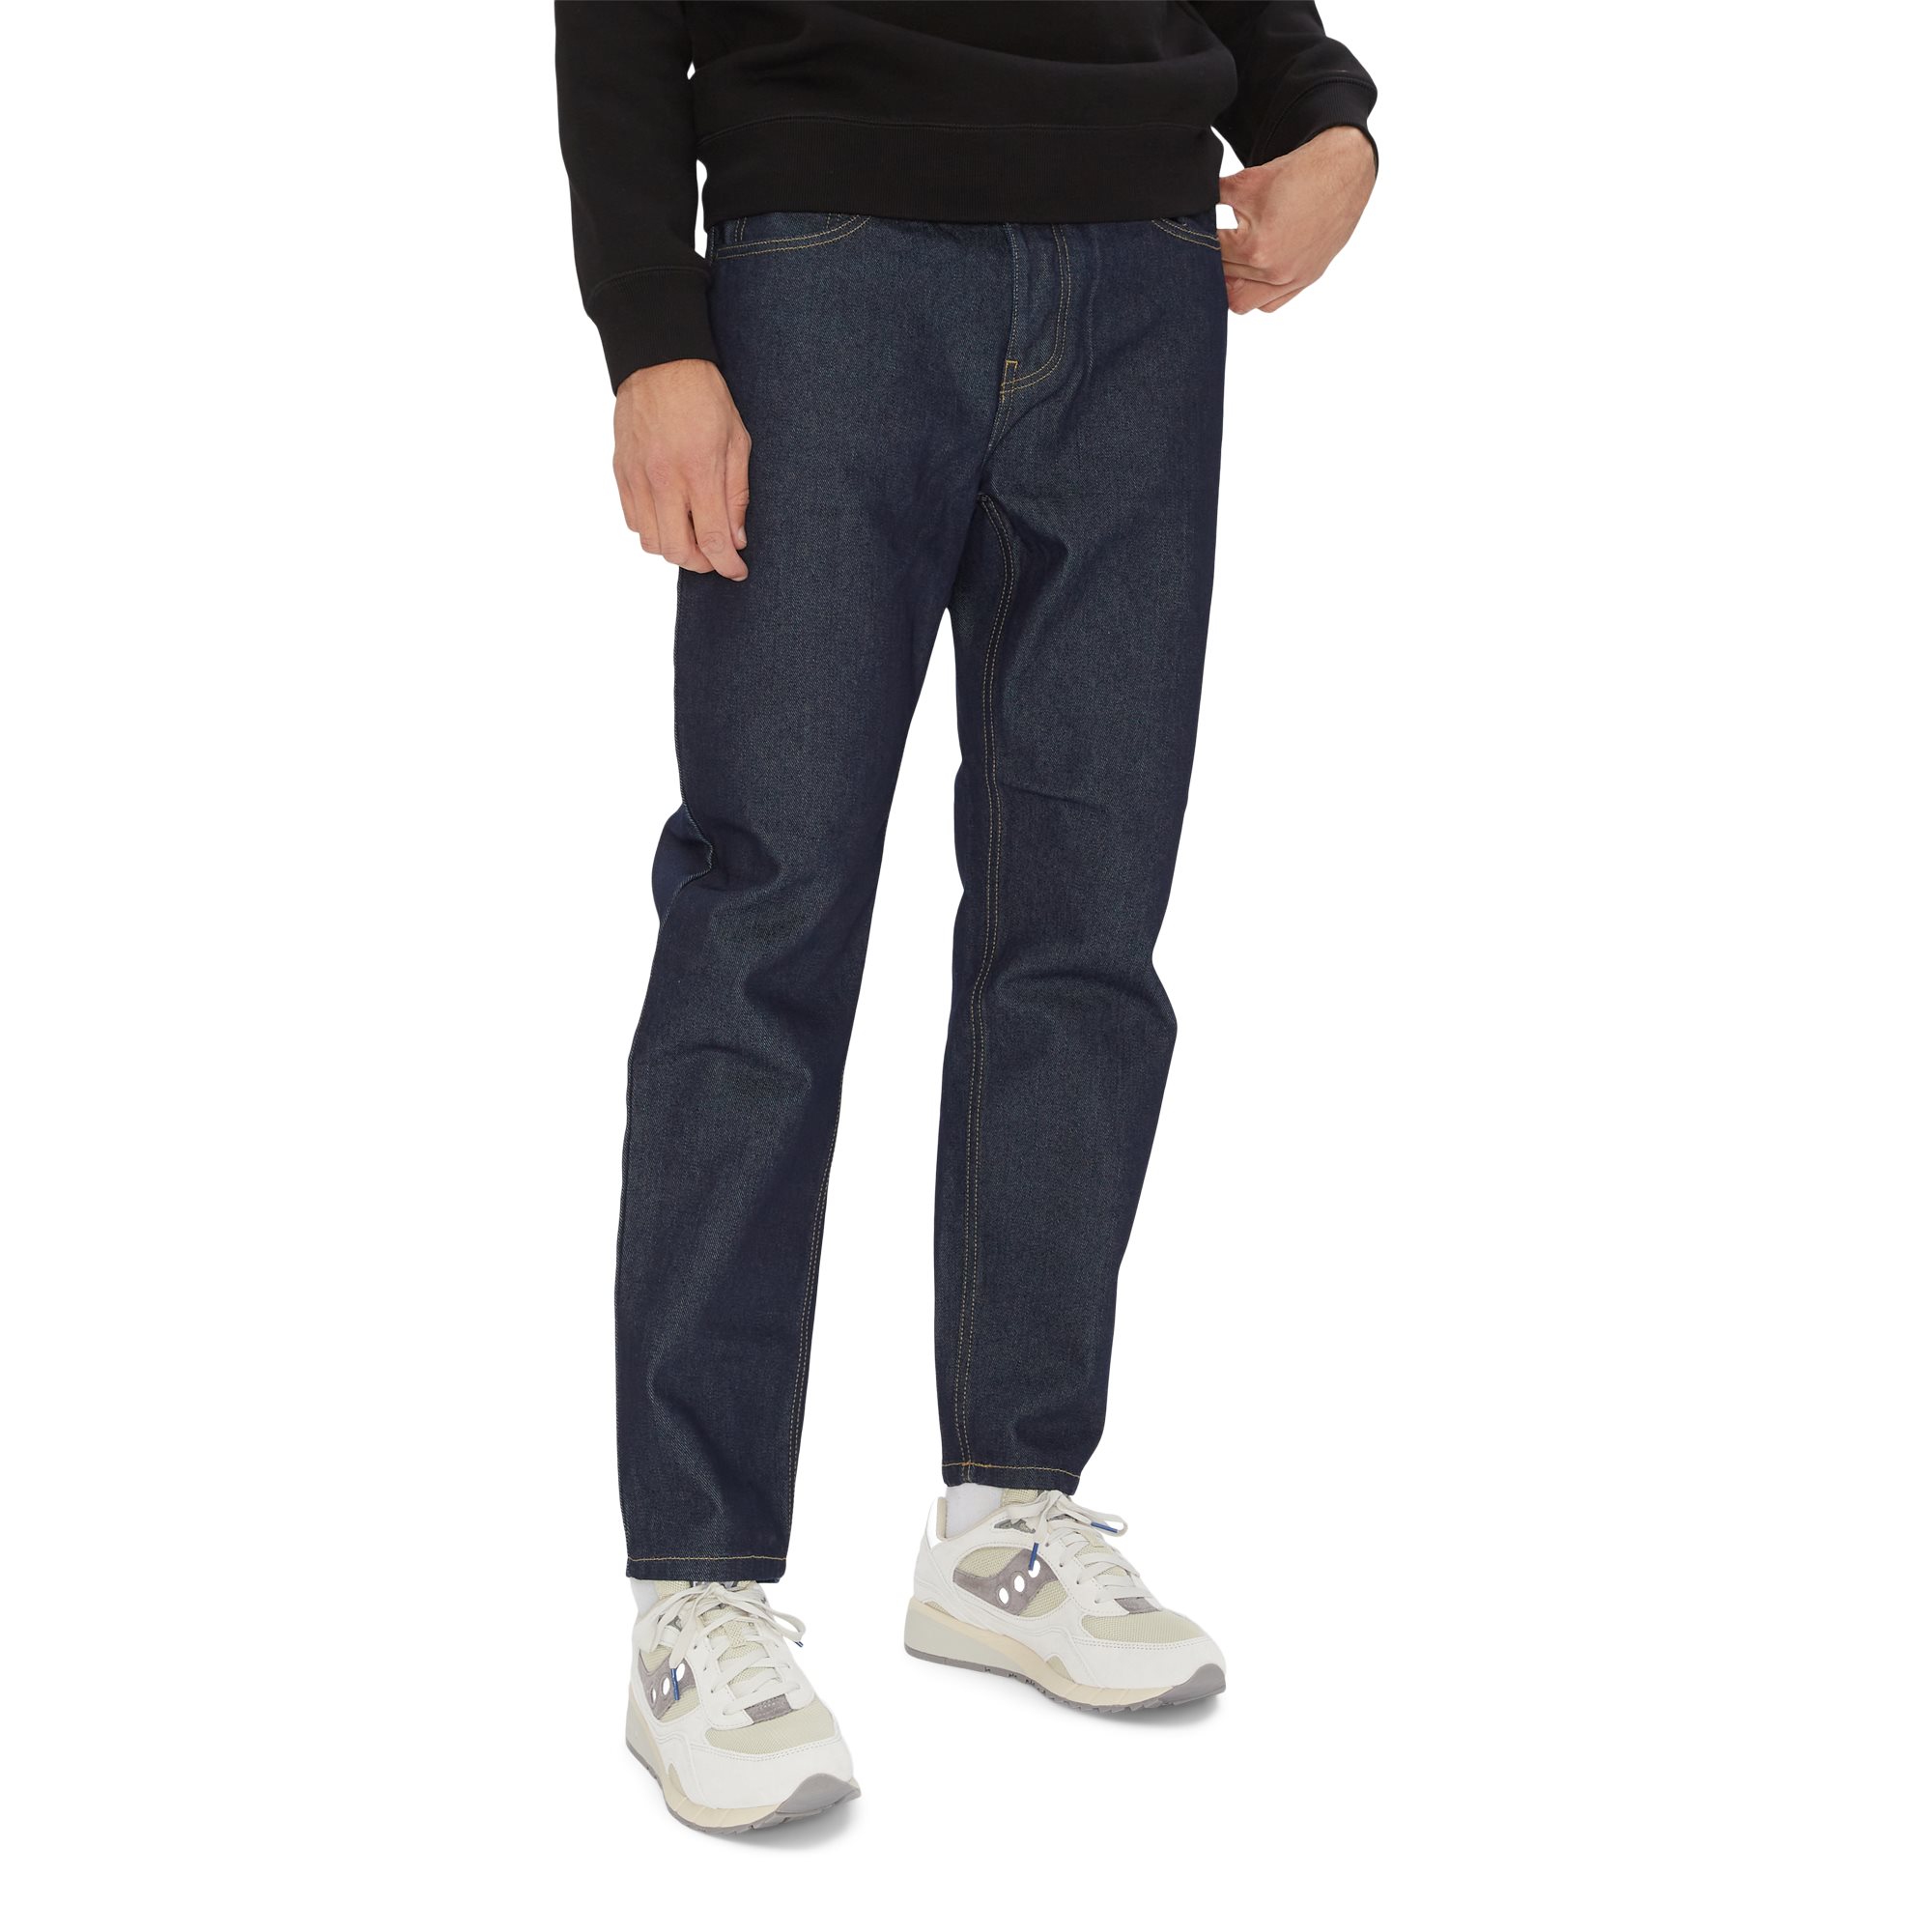 Newel Buks  - Jeans - Regular fit - Denim